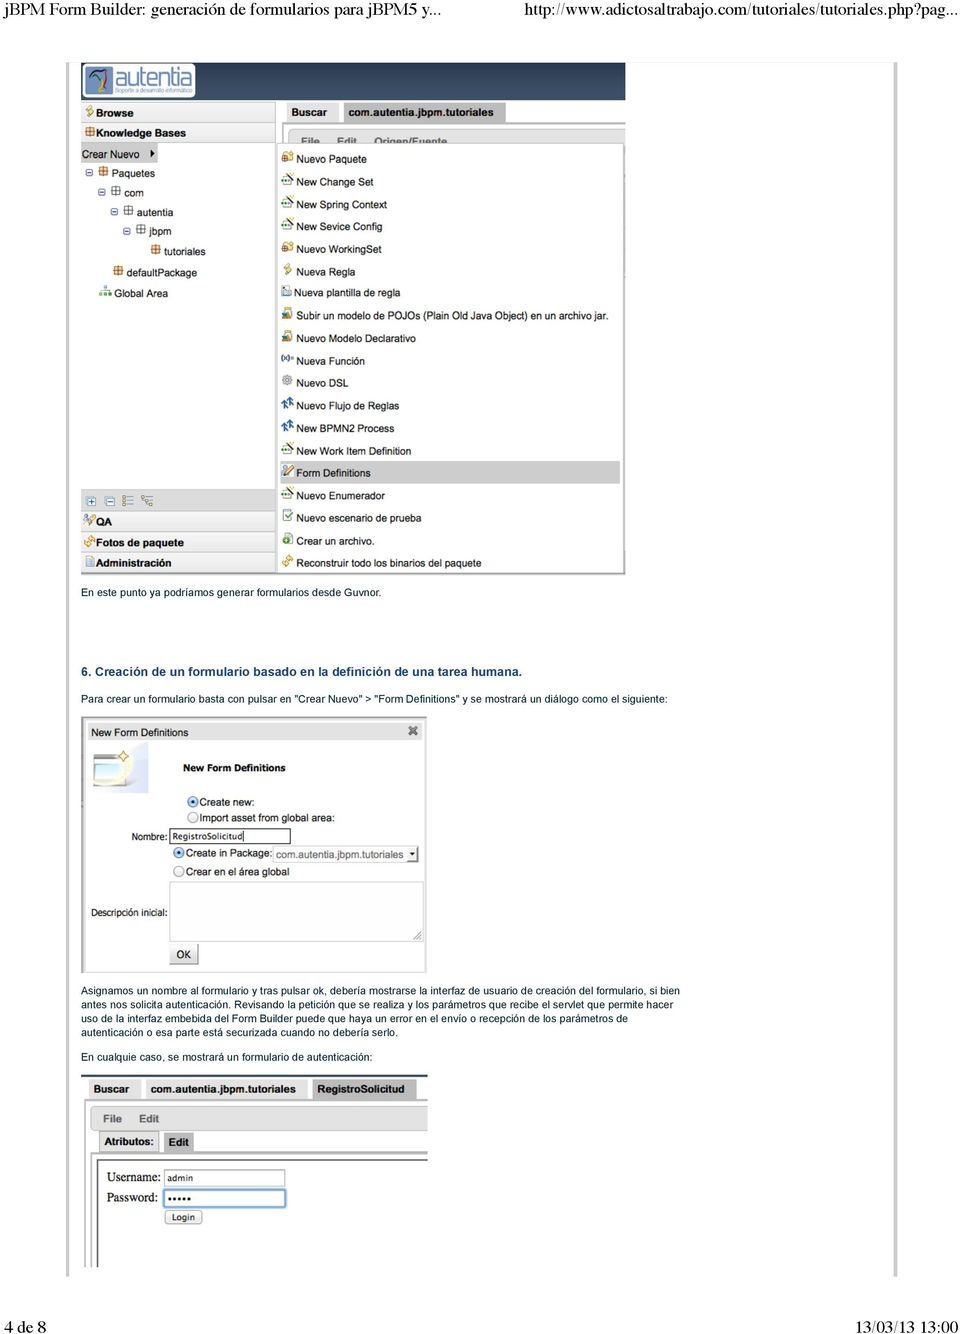 la interfaz de usuario de creación del formulario, si bien antes nos solicita autenticación.